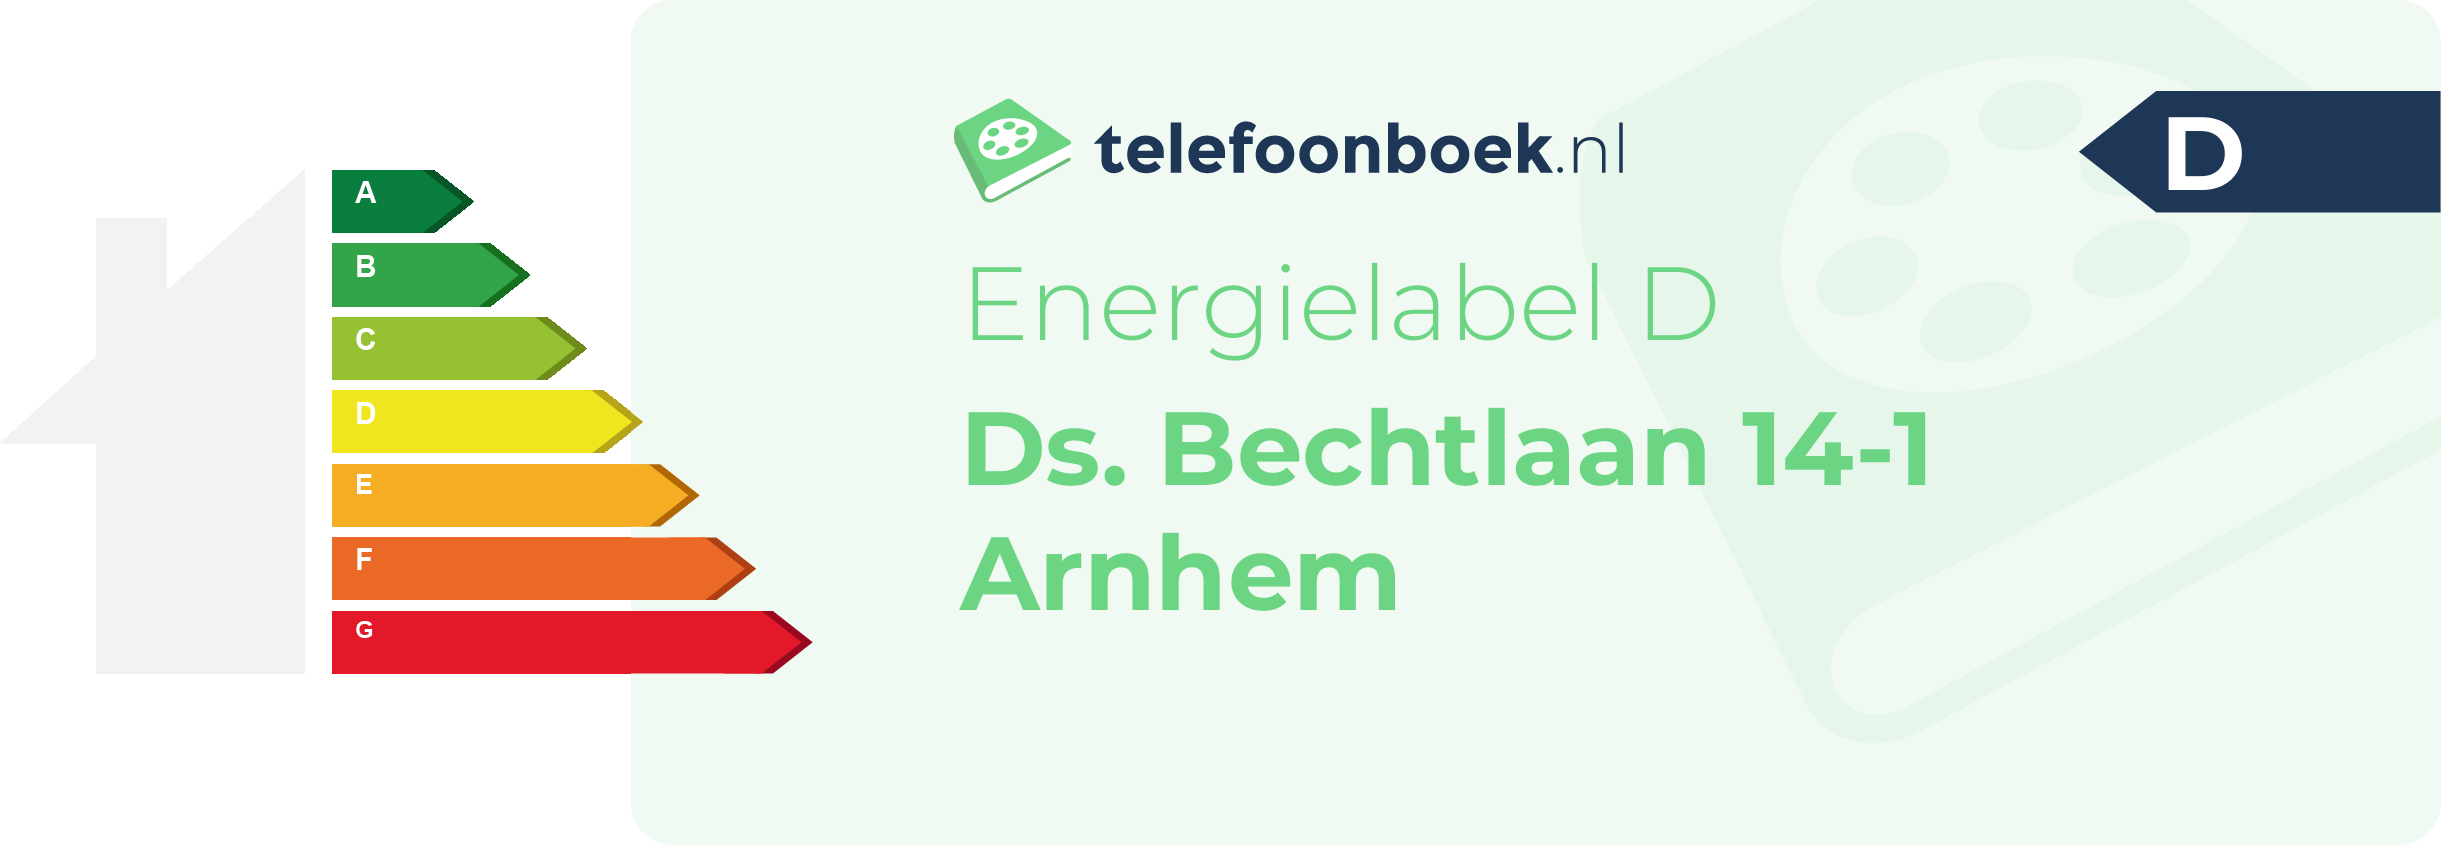 Energielabel Ds. Bechtlaan 14-1 Arnhem